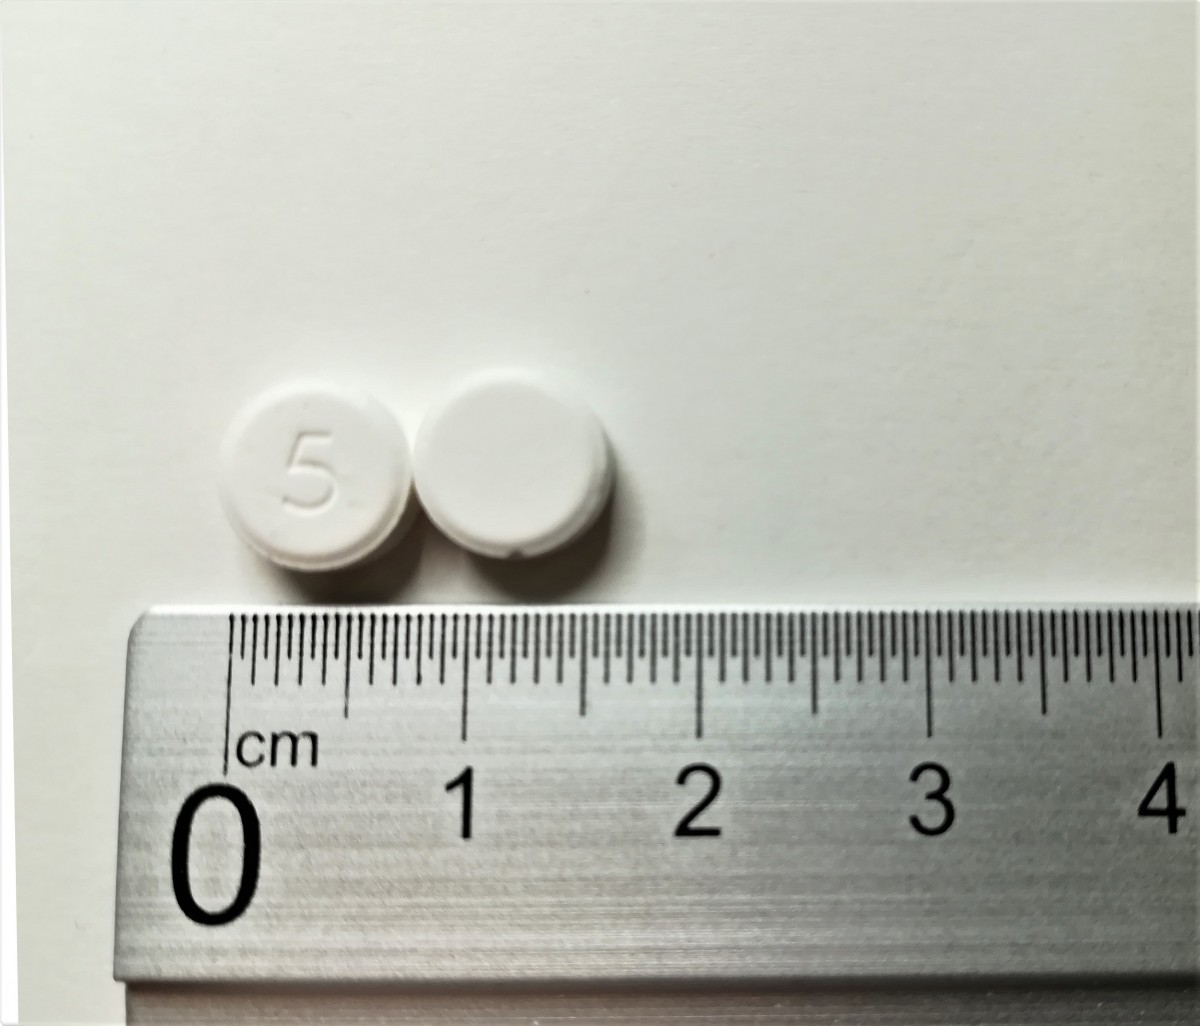 ZOLMITRIPTAN NORMON 5 mg COMPRIMIDOS BUCODISPERSABLES EFG 6 comprimidos fotografía de la forma farmacéutica.